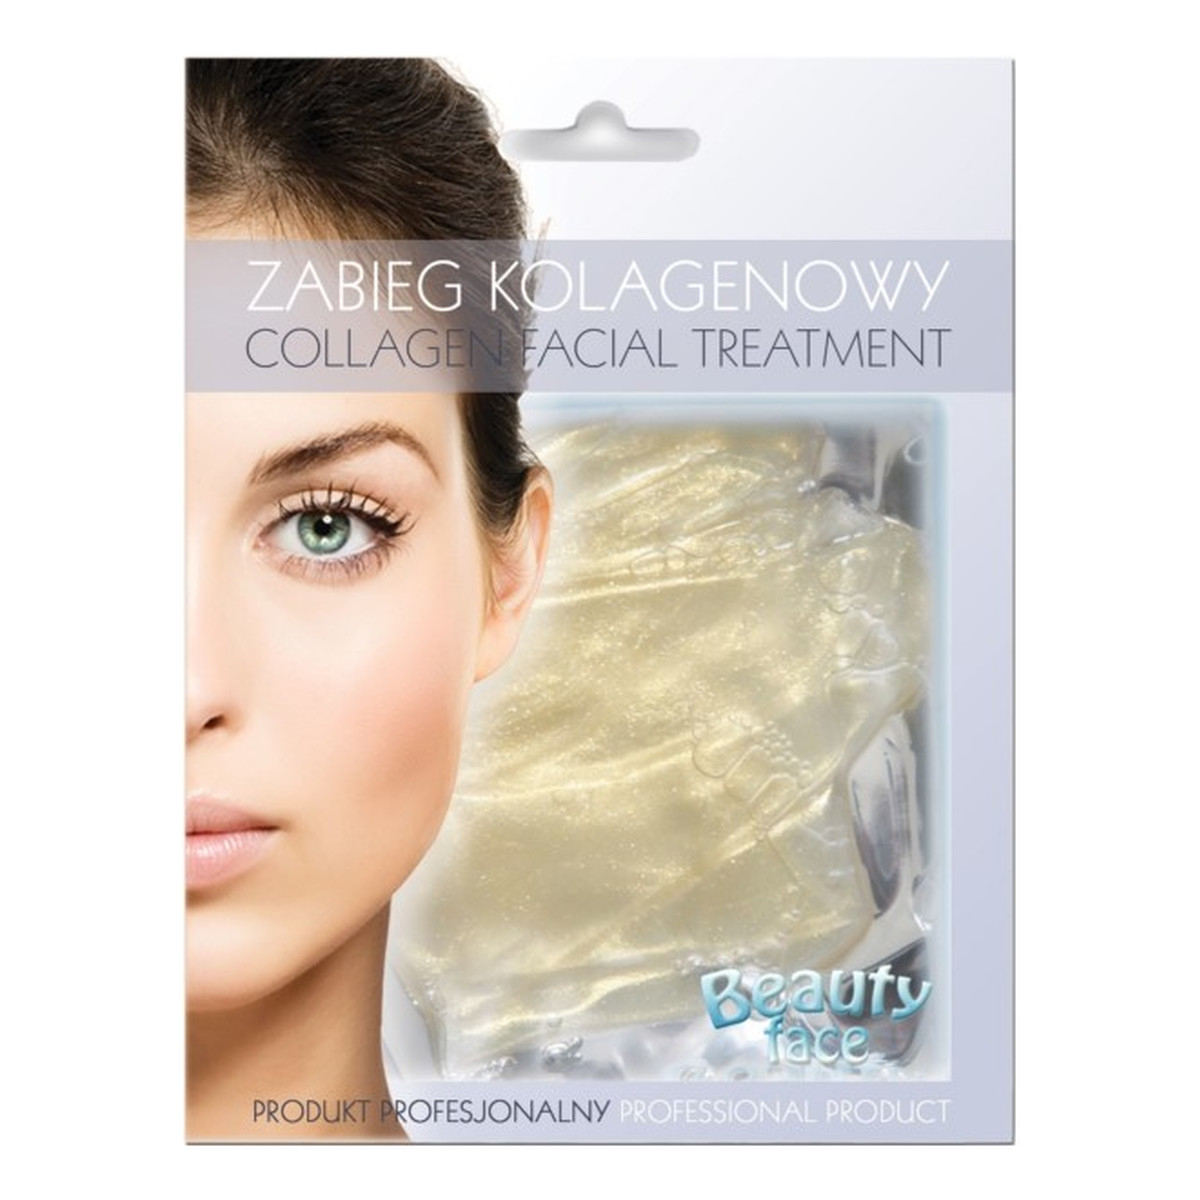 Beauty Face Collagen Facial Treatment rozświetlający zabieg kolagenowy z diamentami i złotem w płacie hydrożelowym